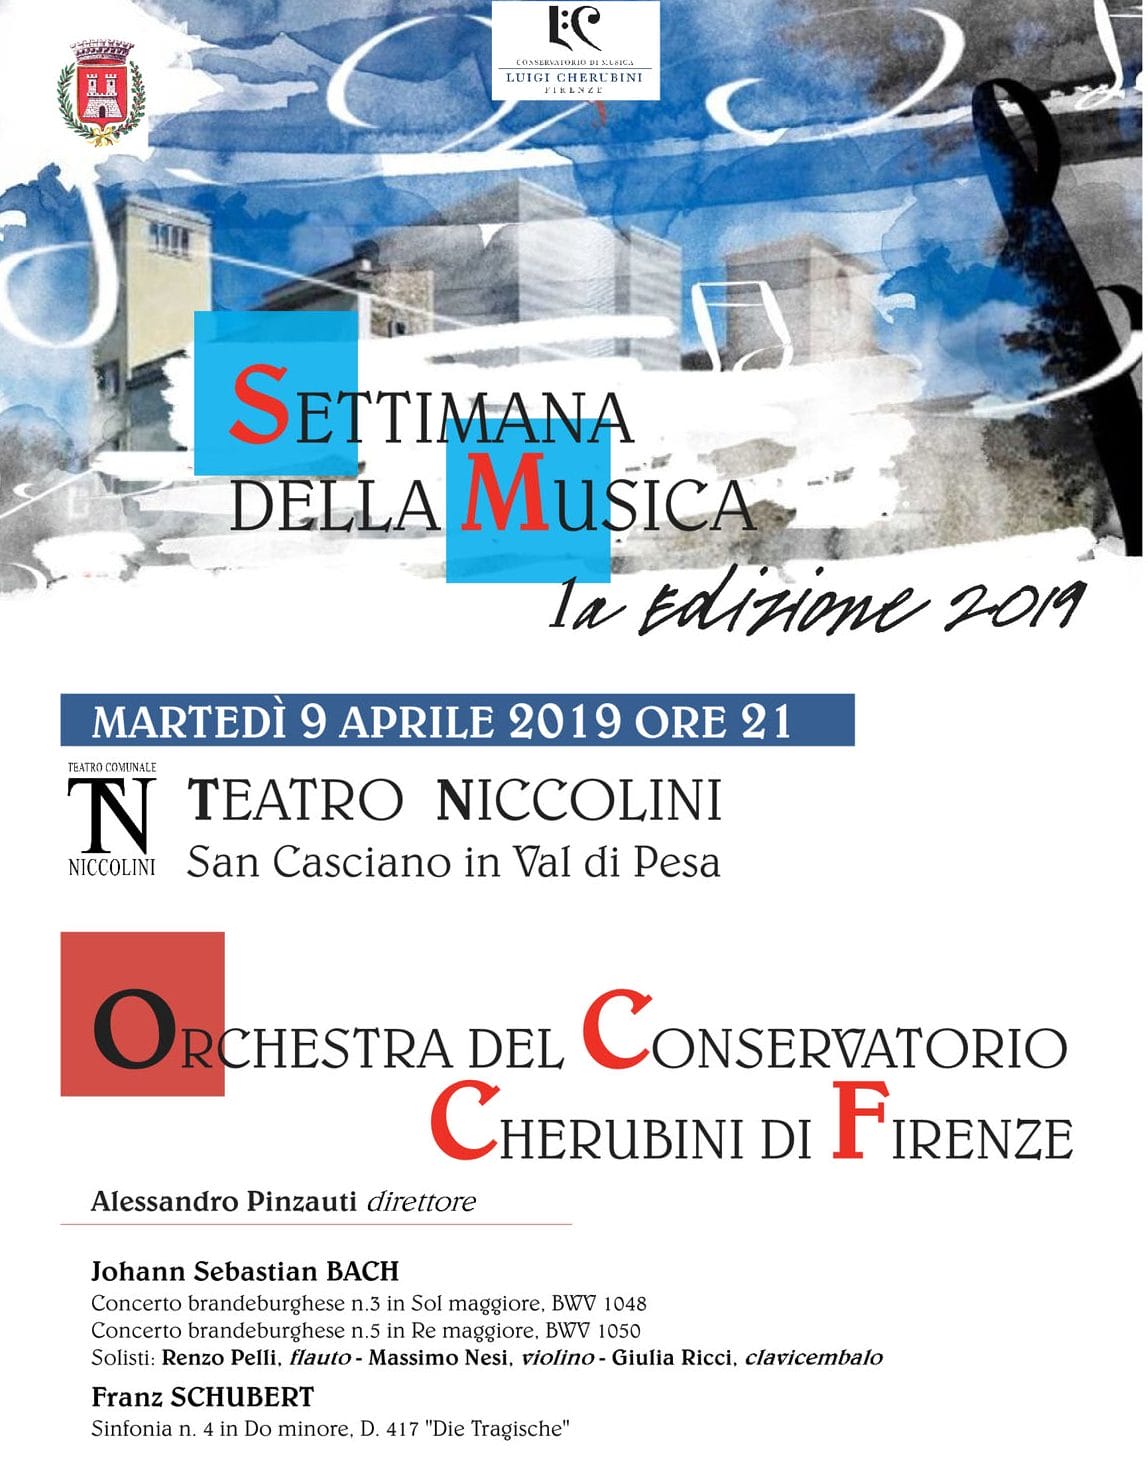 Prima edizione della Settimana della Musica. Martedì 9 aprile con Orchestra del Conservatorio Cherubini